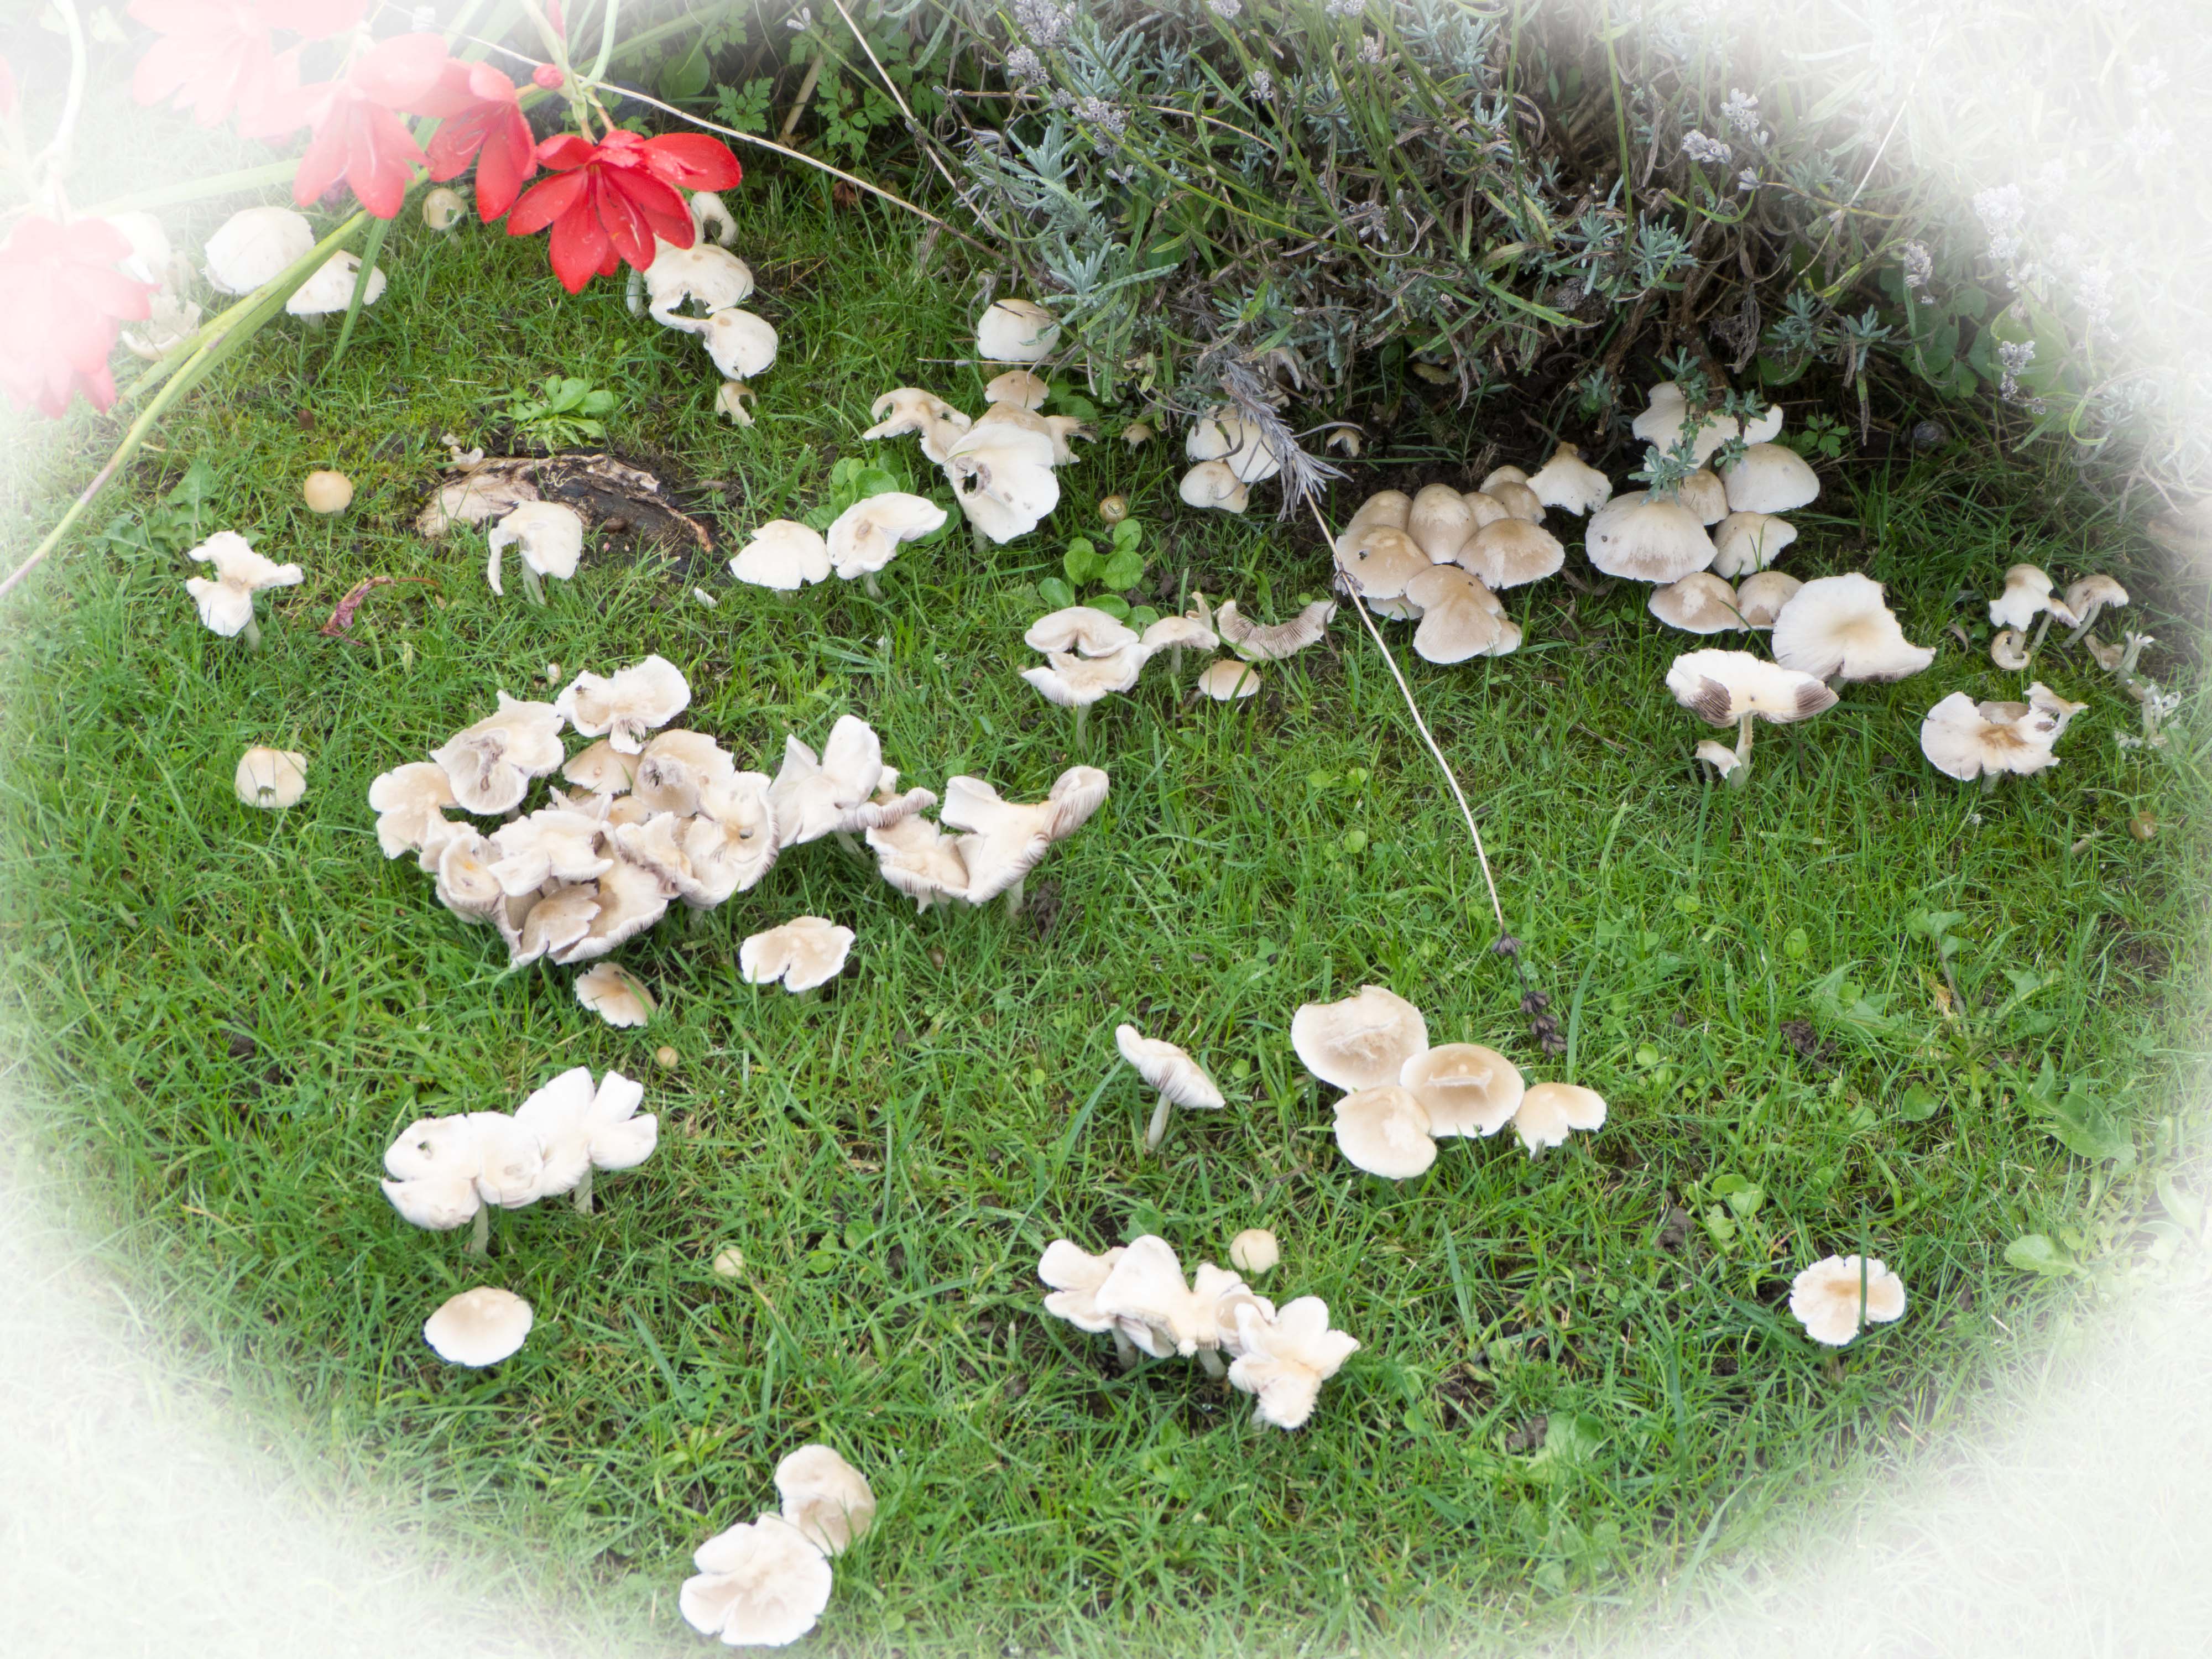 Mushrooms in lawn_edited-1.jpg